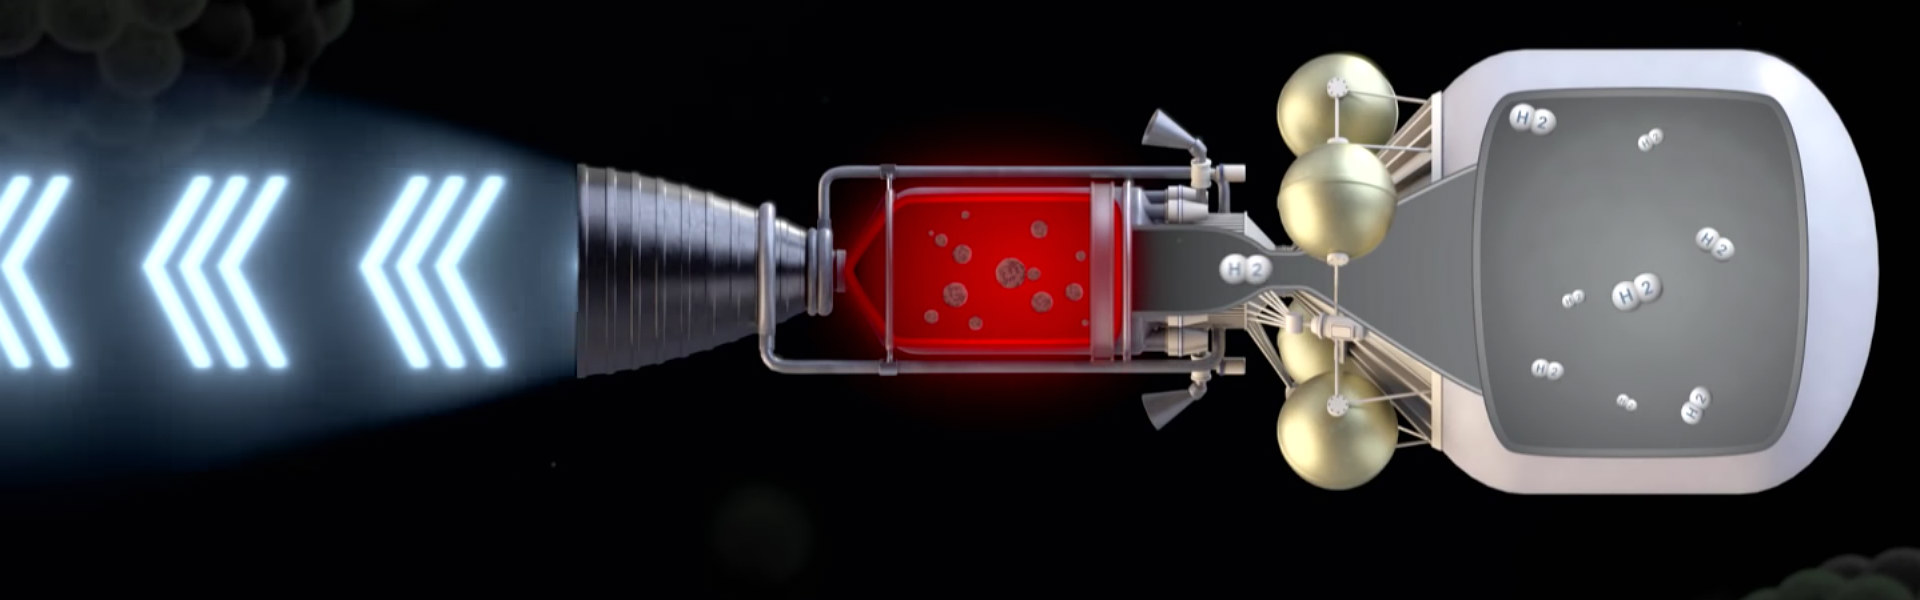 DARPA займется разработкой ракетного ядерного двигателя - 1